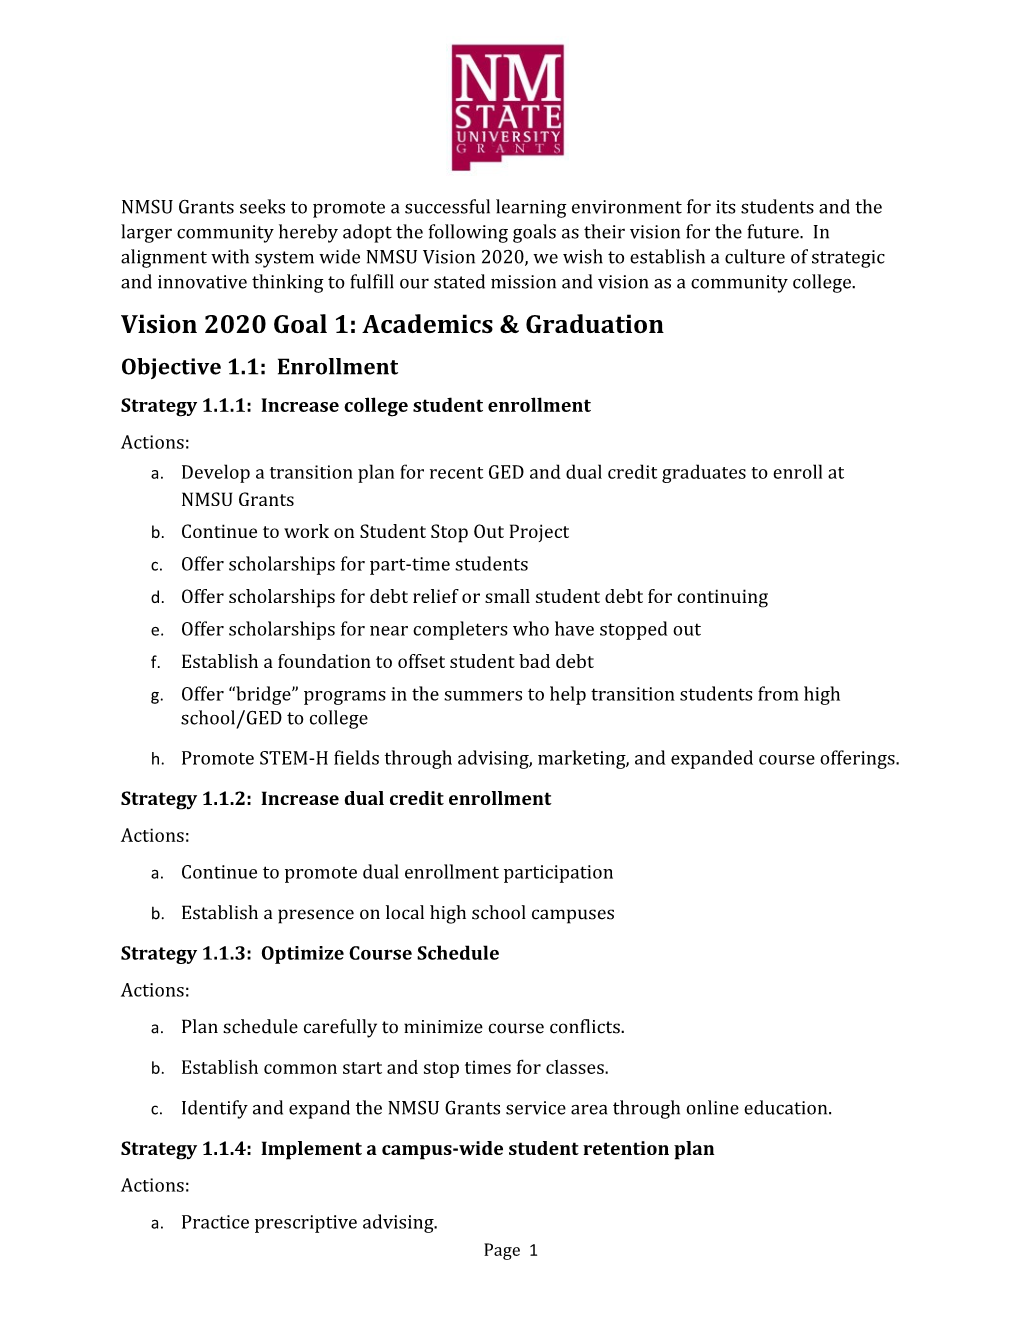 Vision 2020 Goal 1: Academics & Graduation